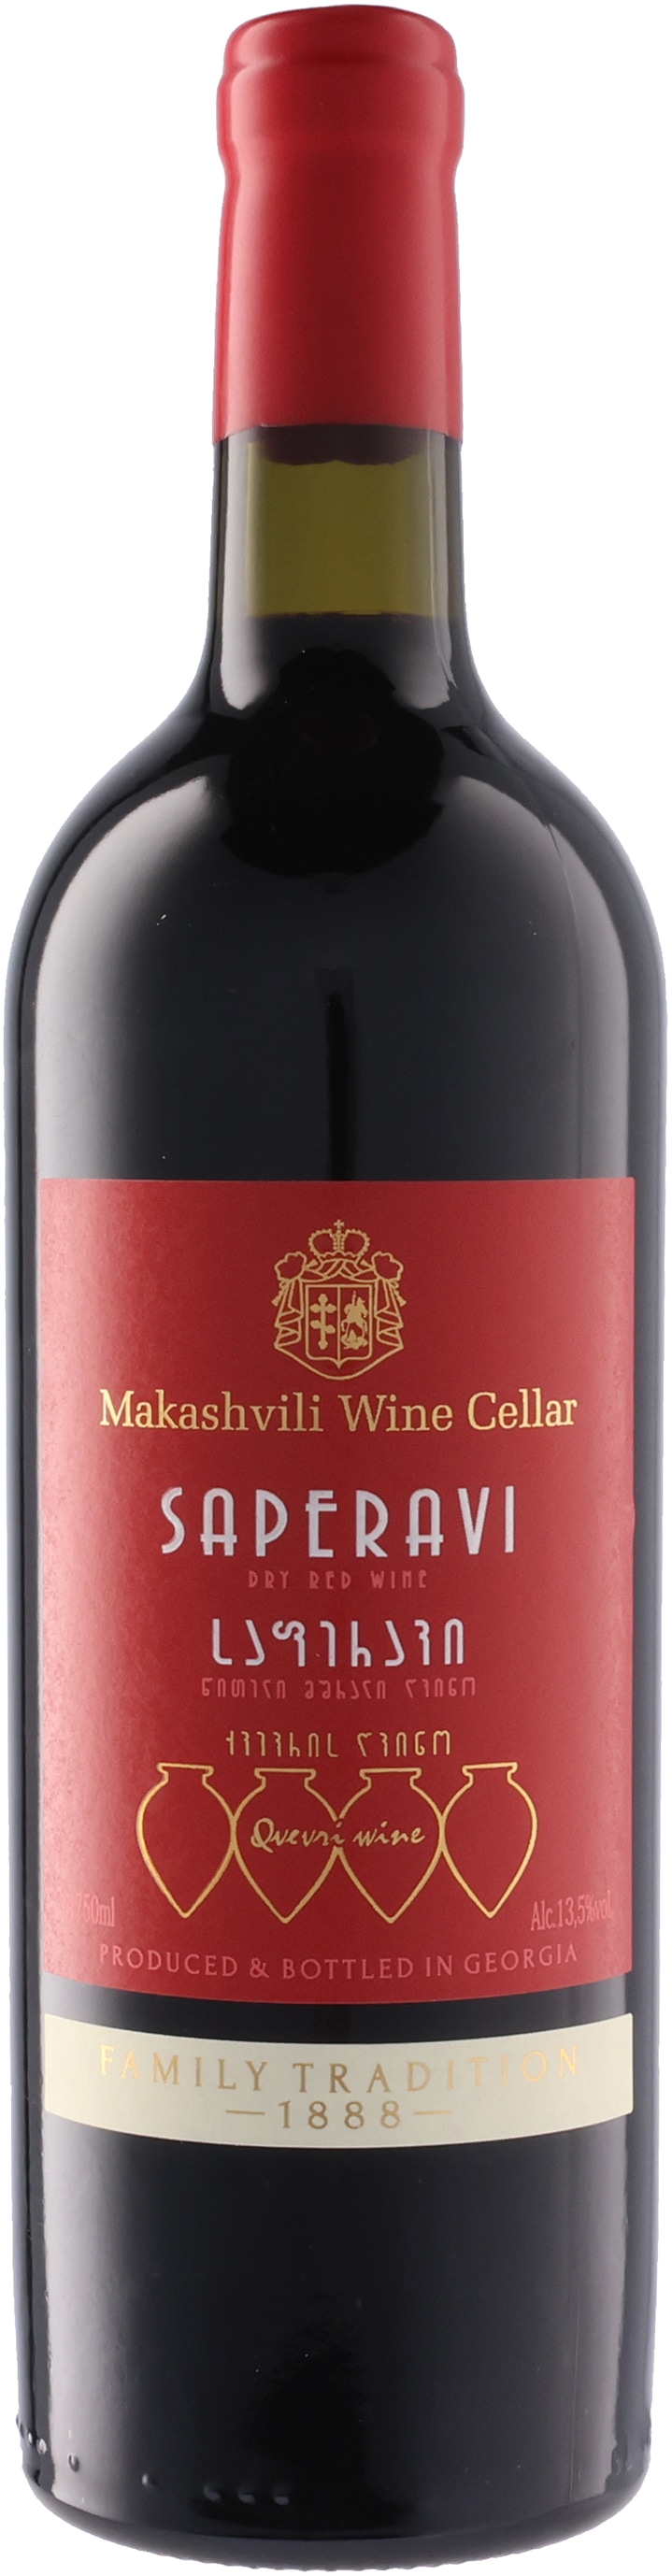 マカシヴィリ･ワイン･セラー サペラヴィ